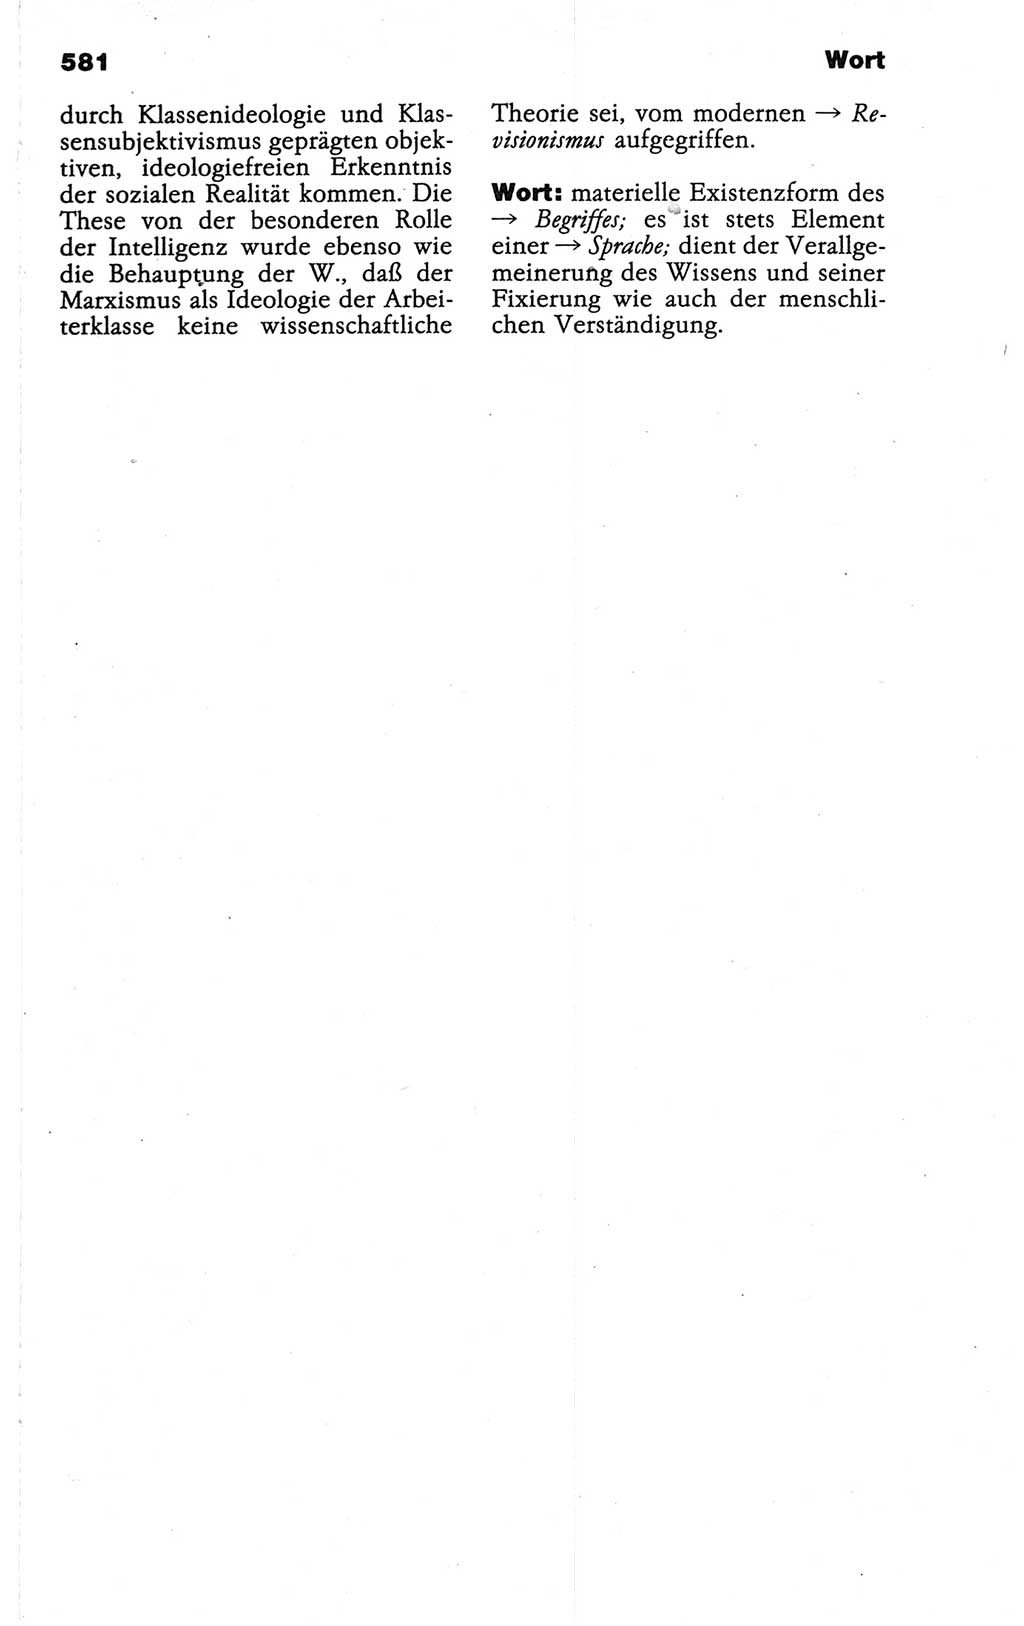 Wörterbuch der marxistisch-leninistischen Philosophie [Deutsche Demokratische Republik (DDR)] 1986, Seite 581 (Wb. ML Phil. DDR 1986, S. 581)